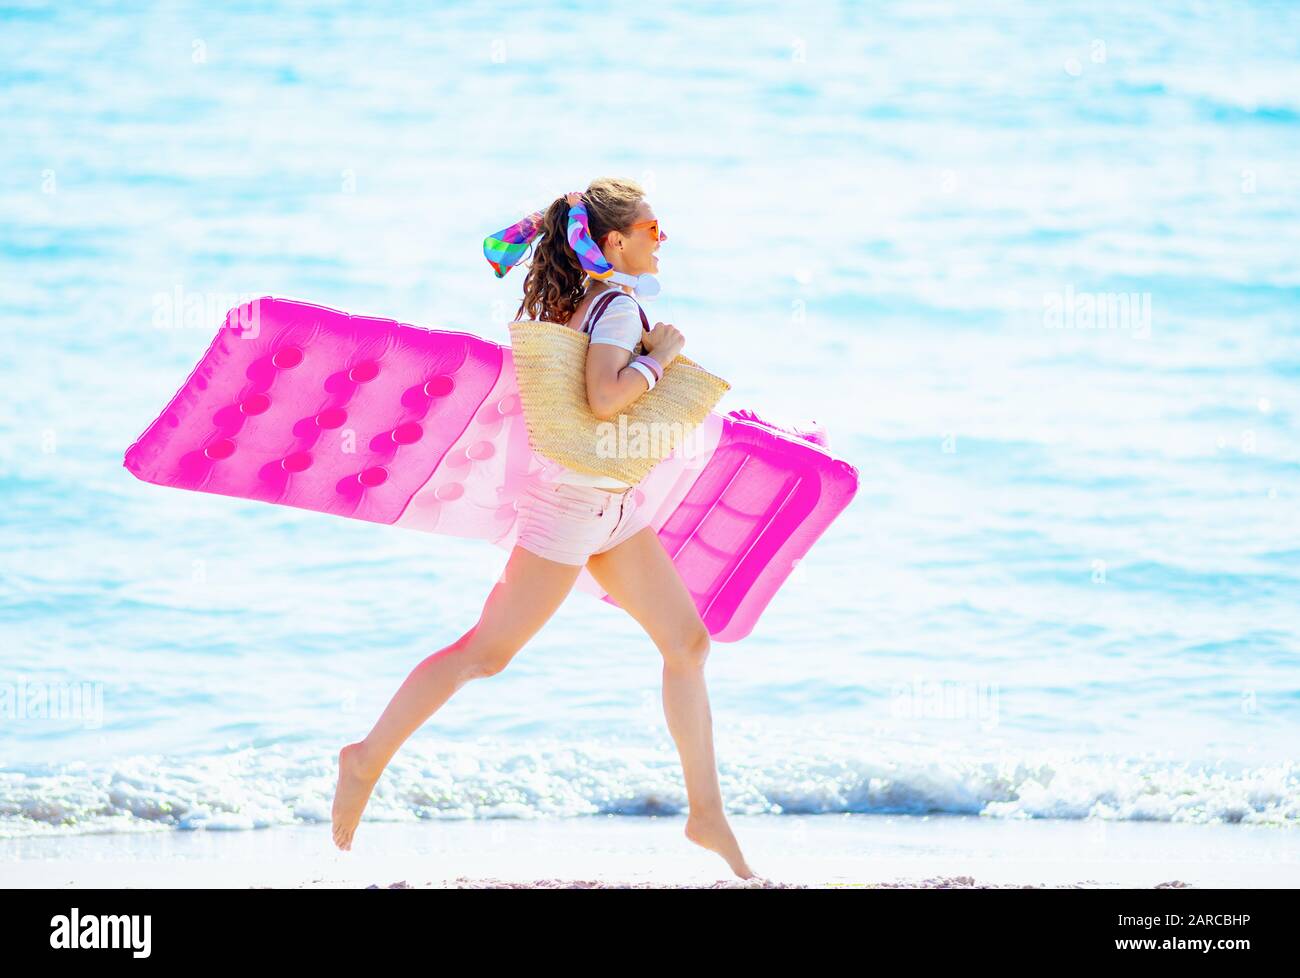 heureuse jeune femme en t-shirt blanc et short rose avec sac de paille de plage sur la mer tenant matelas gonflable et course à pied. Banque D'Images